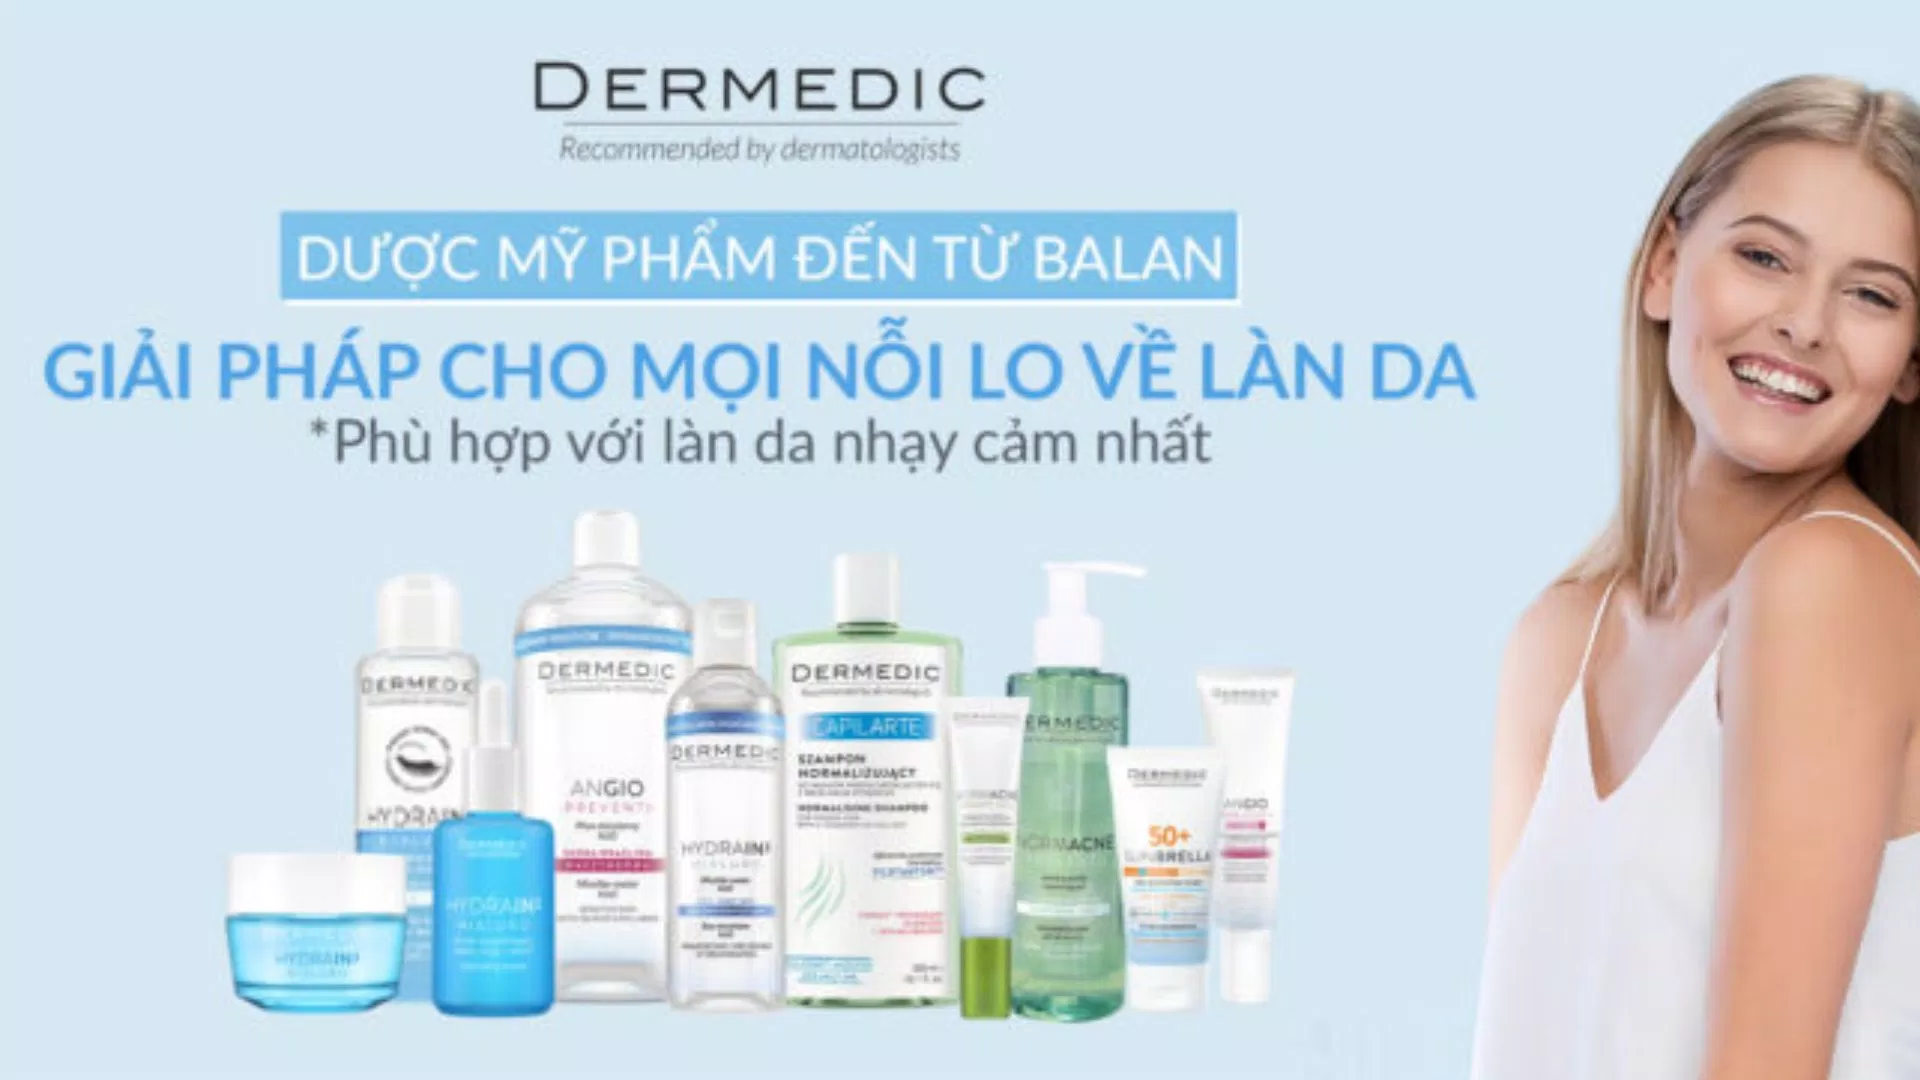 Thương hiệu Dermedic là một thương hiệu làm đẹp nổi tiếng đến từ Ba Lan (Nguồn: Internet)